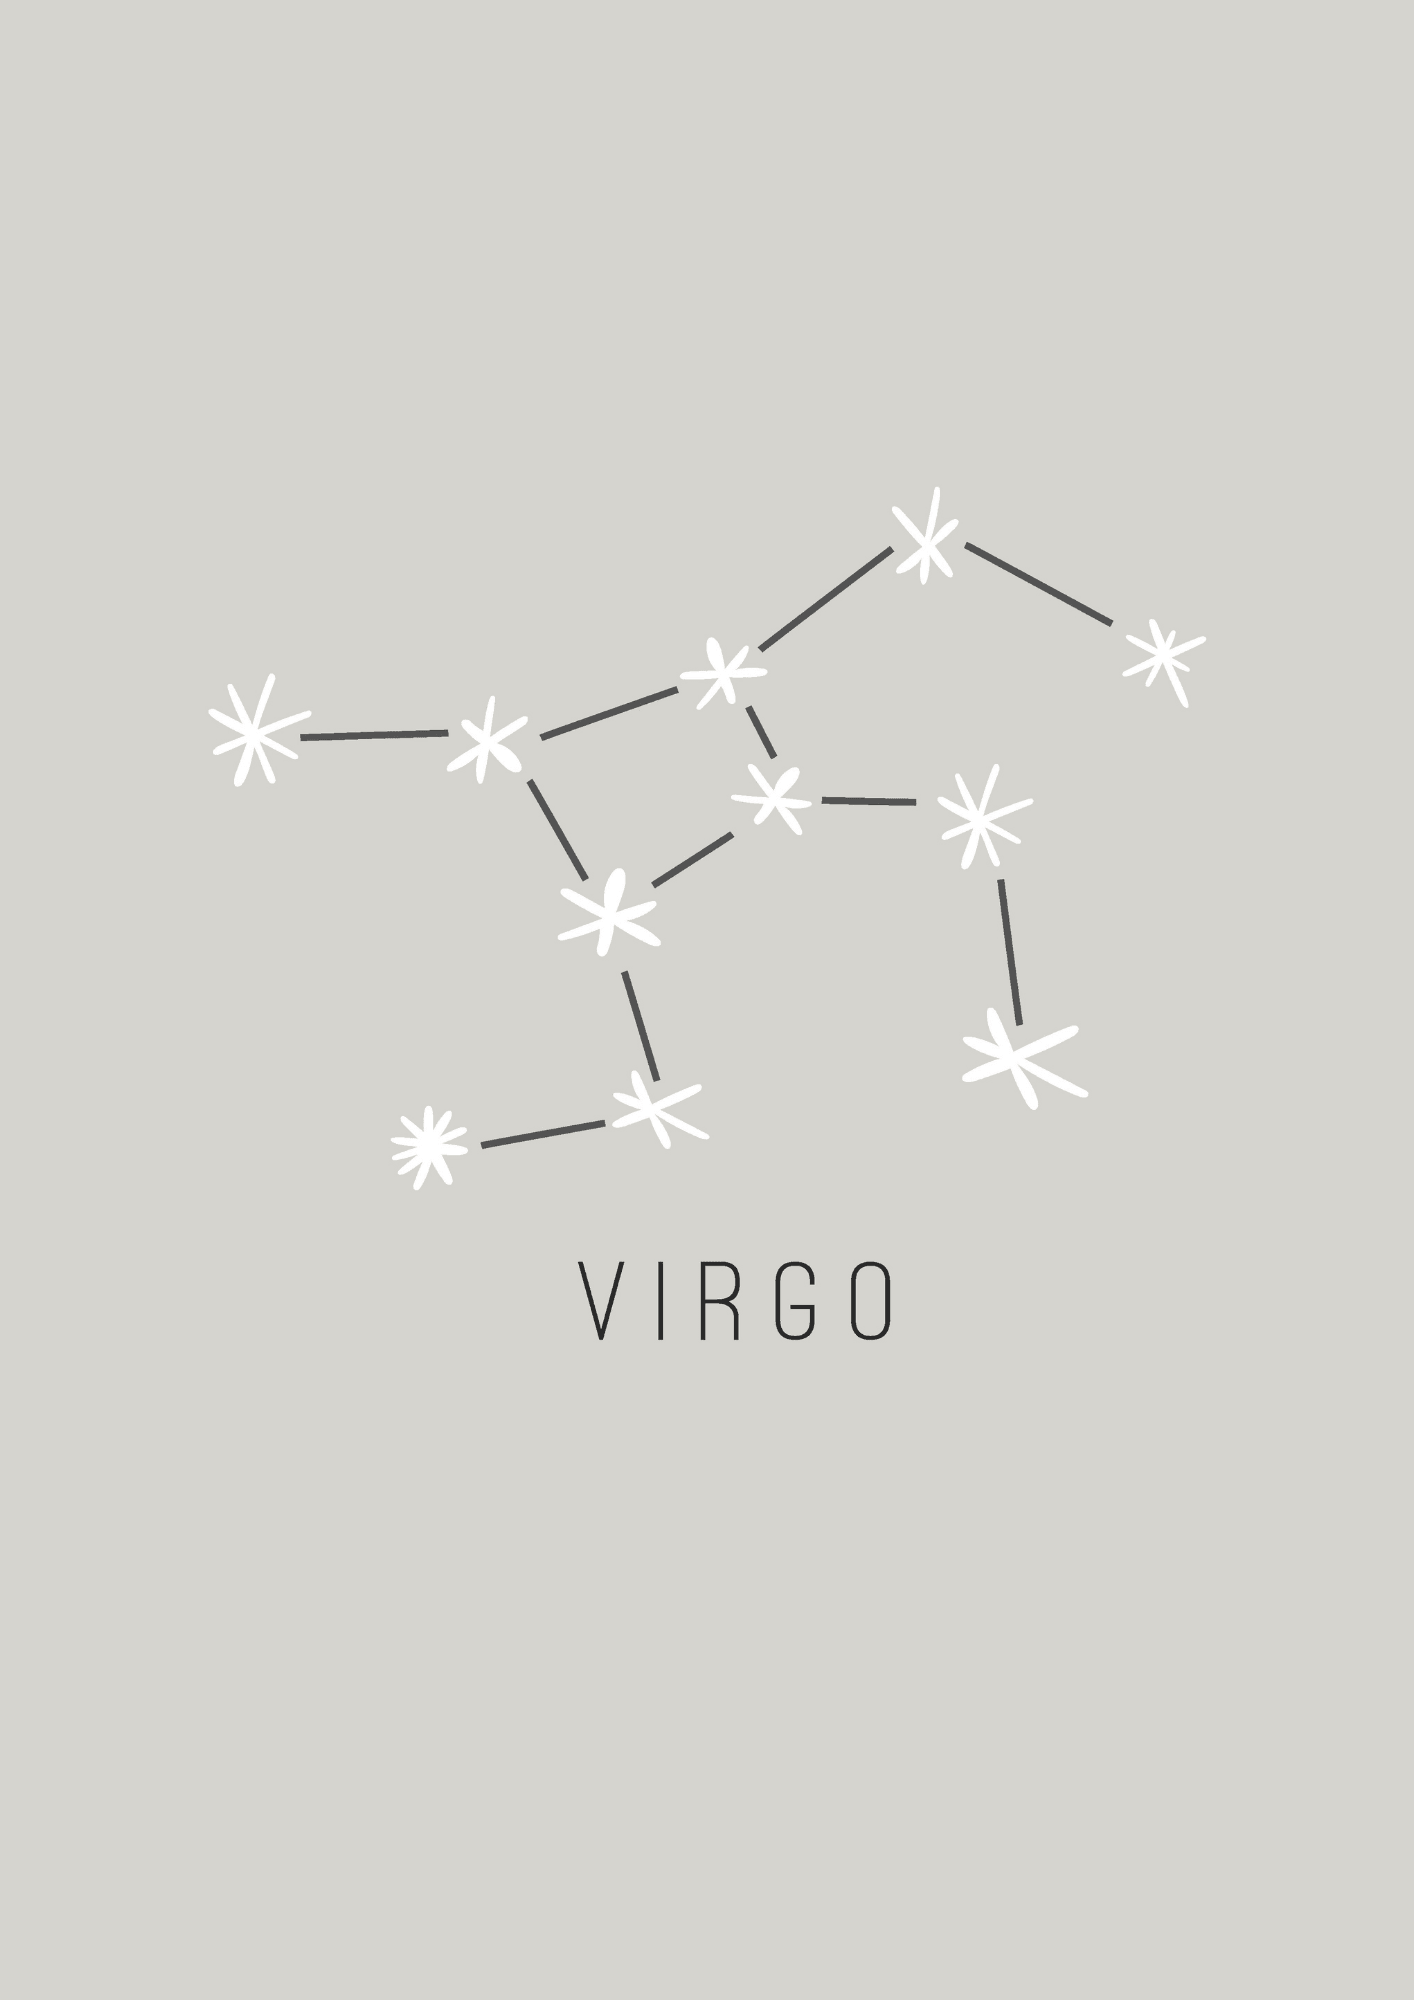 Virgo Constellation - The Ditzy Dodo